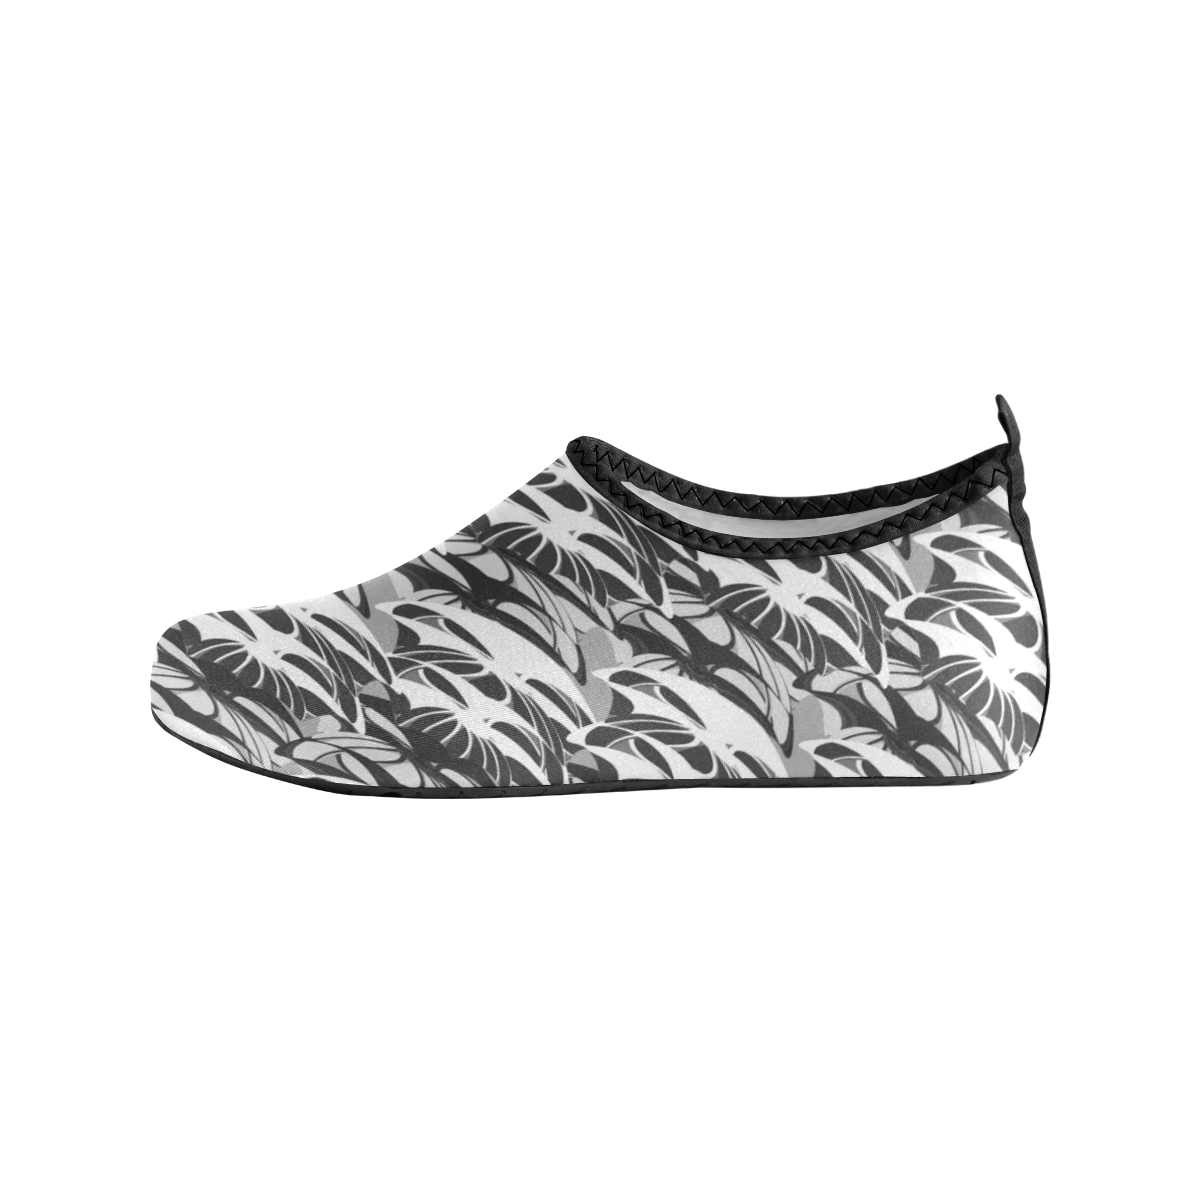 Alien Troops - Black & White Women's Slip-On Water Shoes (Model 056)